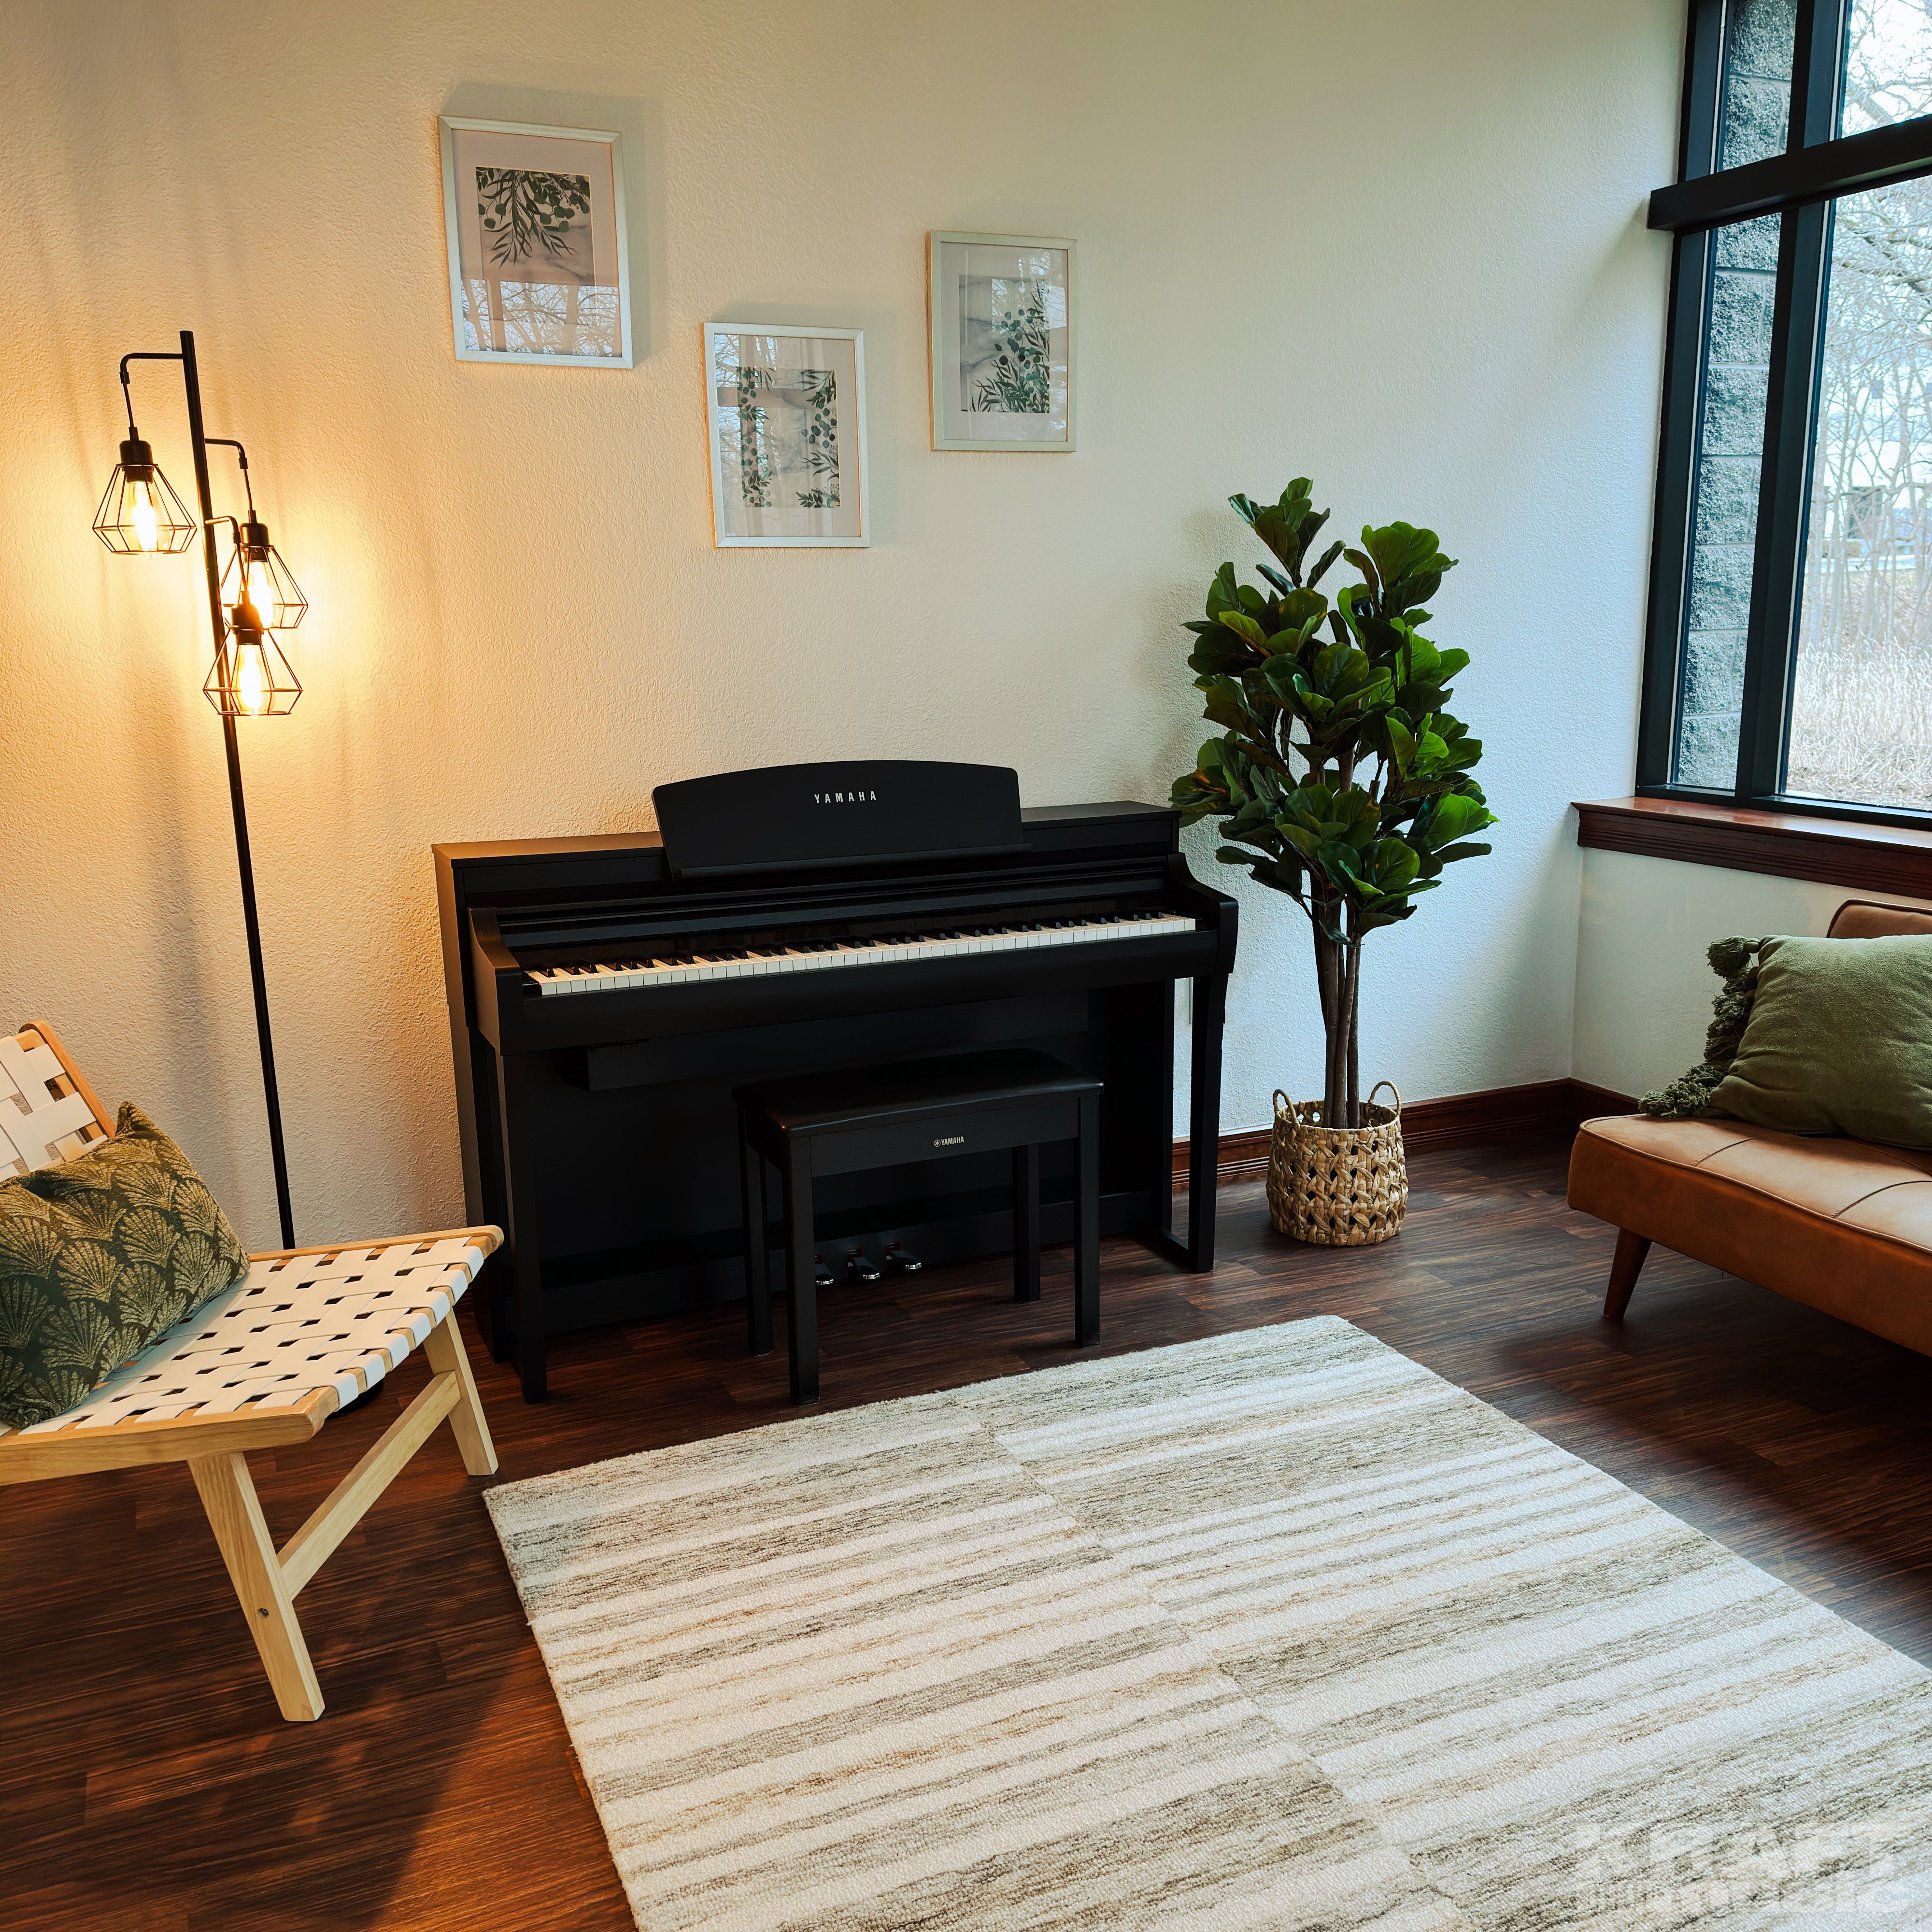 Yamaha Clavinova CSP-275 Digital Piano - Black Walnut - in a stylish living room 